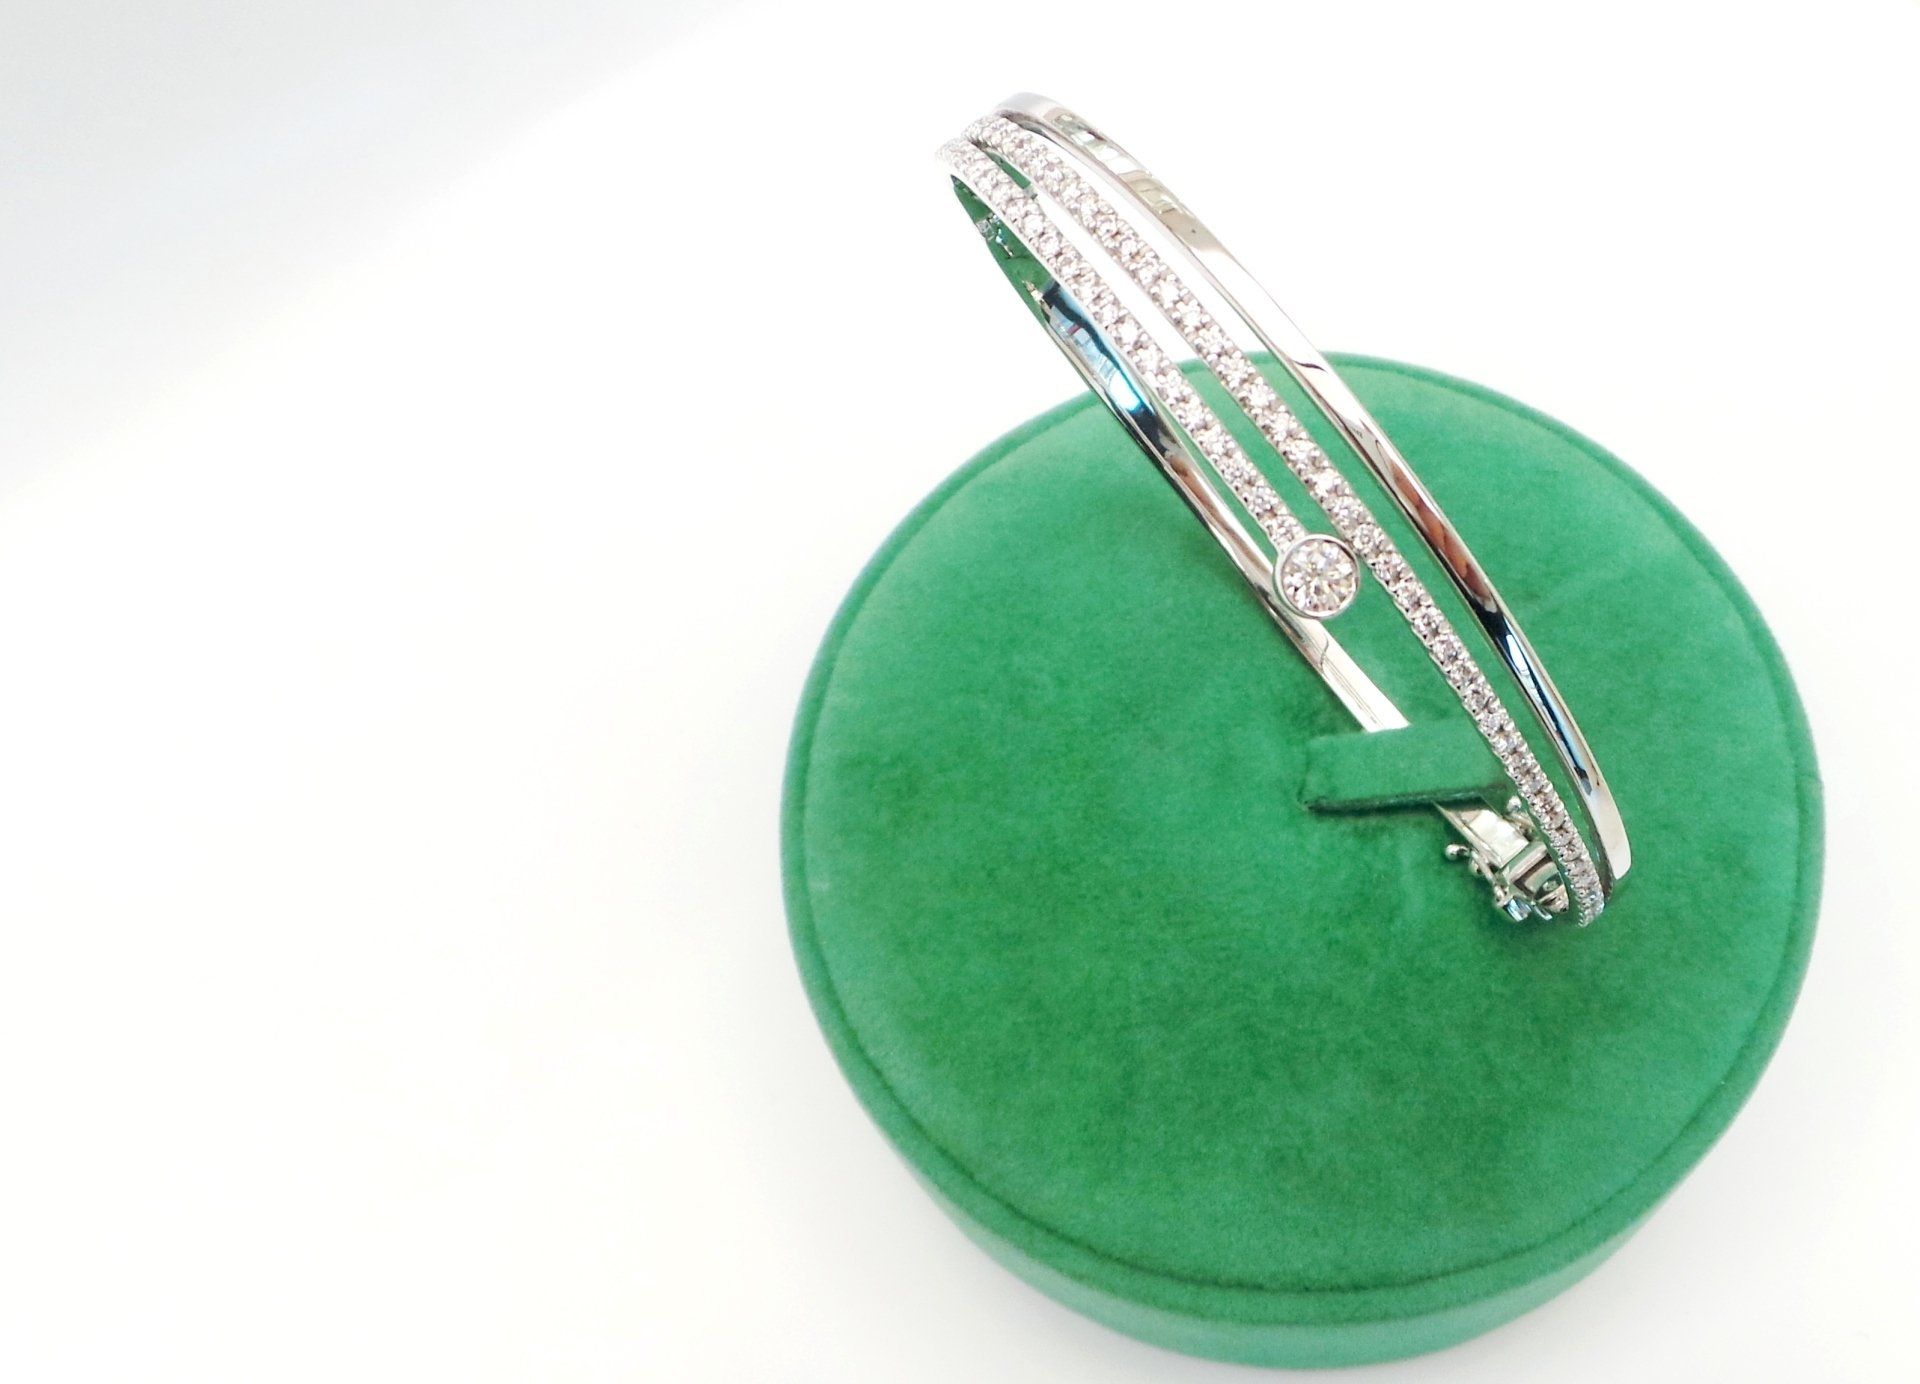 Cattelan Gioielli - bracciale modello doppio giro  oro bianco 750 e diamanti